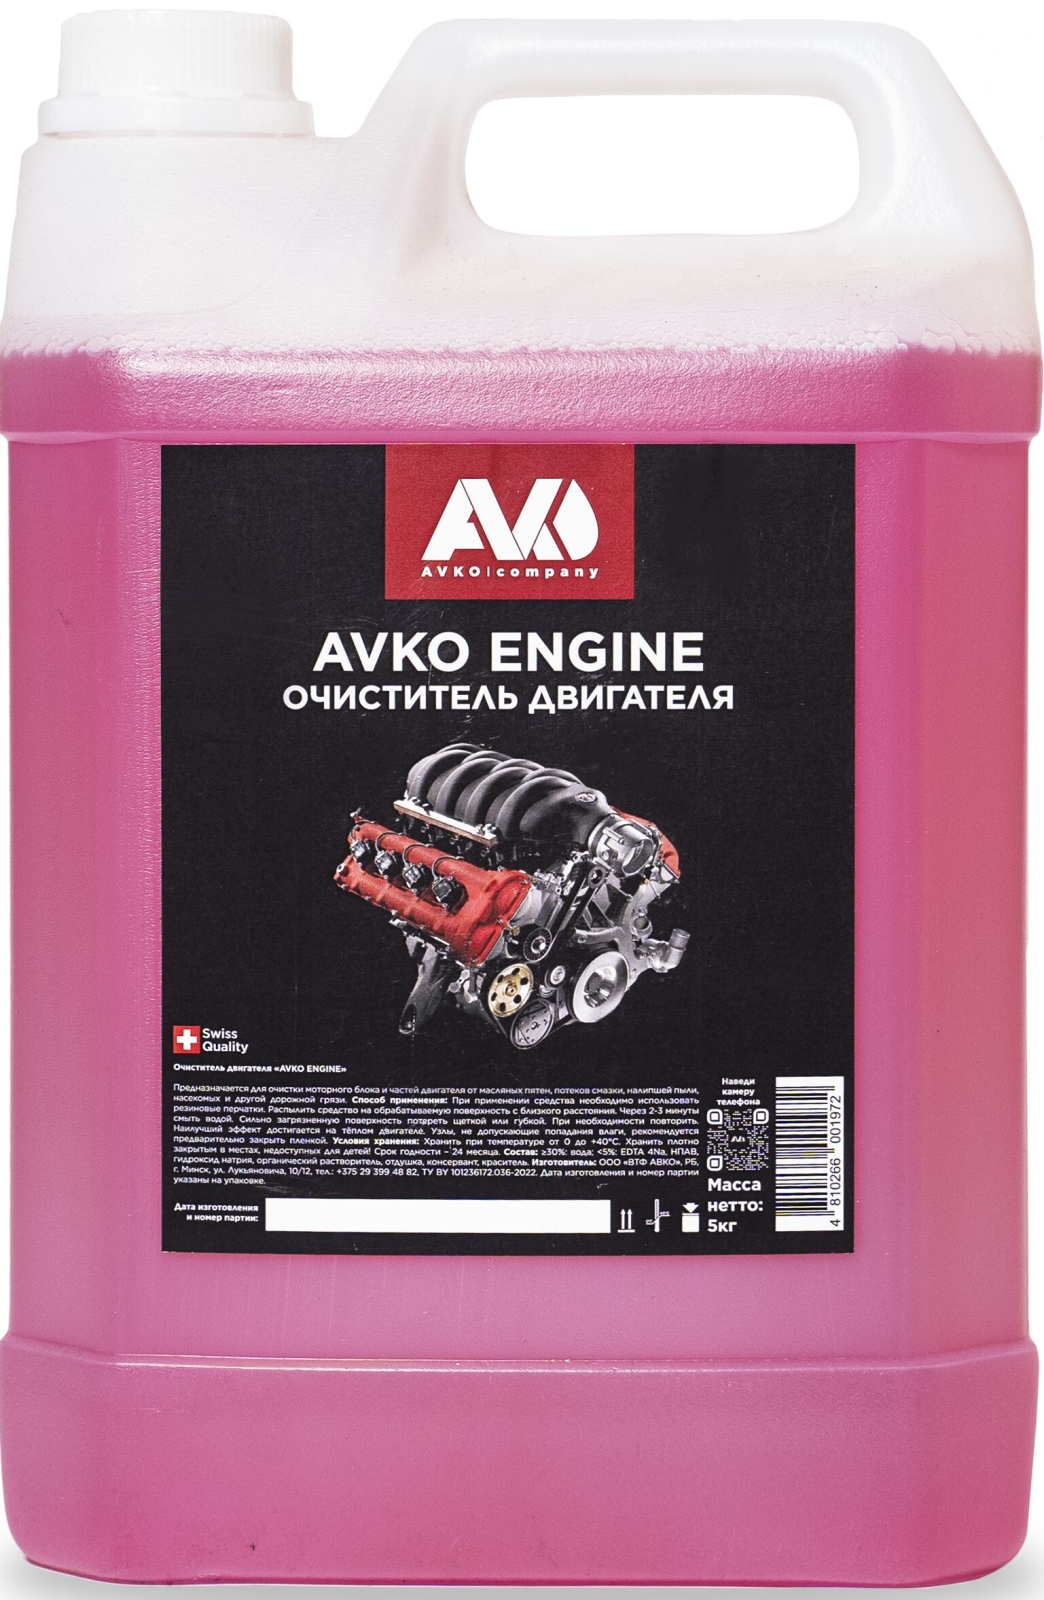 Очиститель двигателя AVKO Engine 5 кг